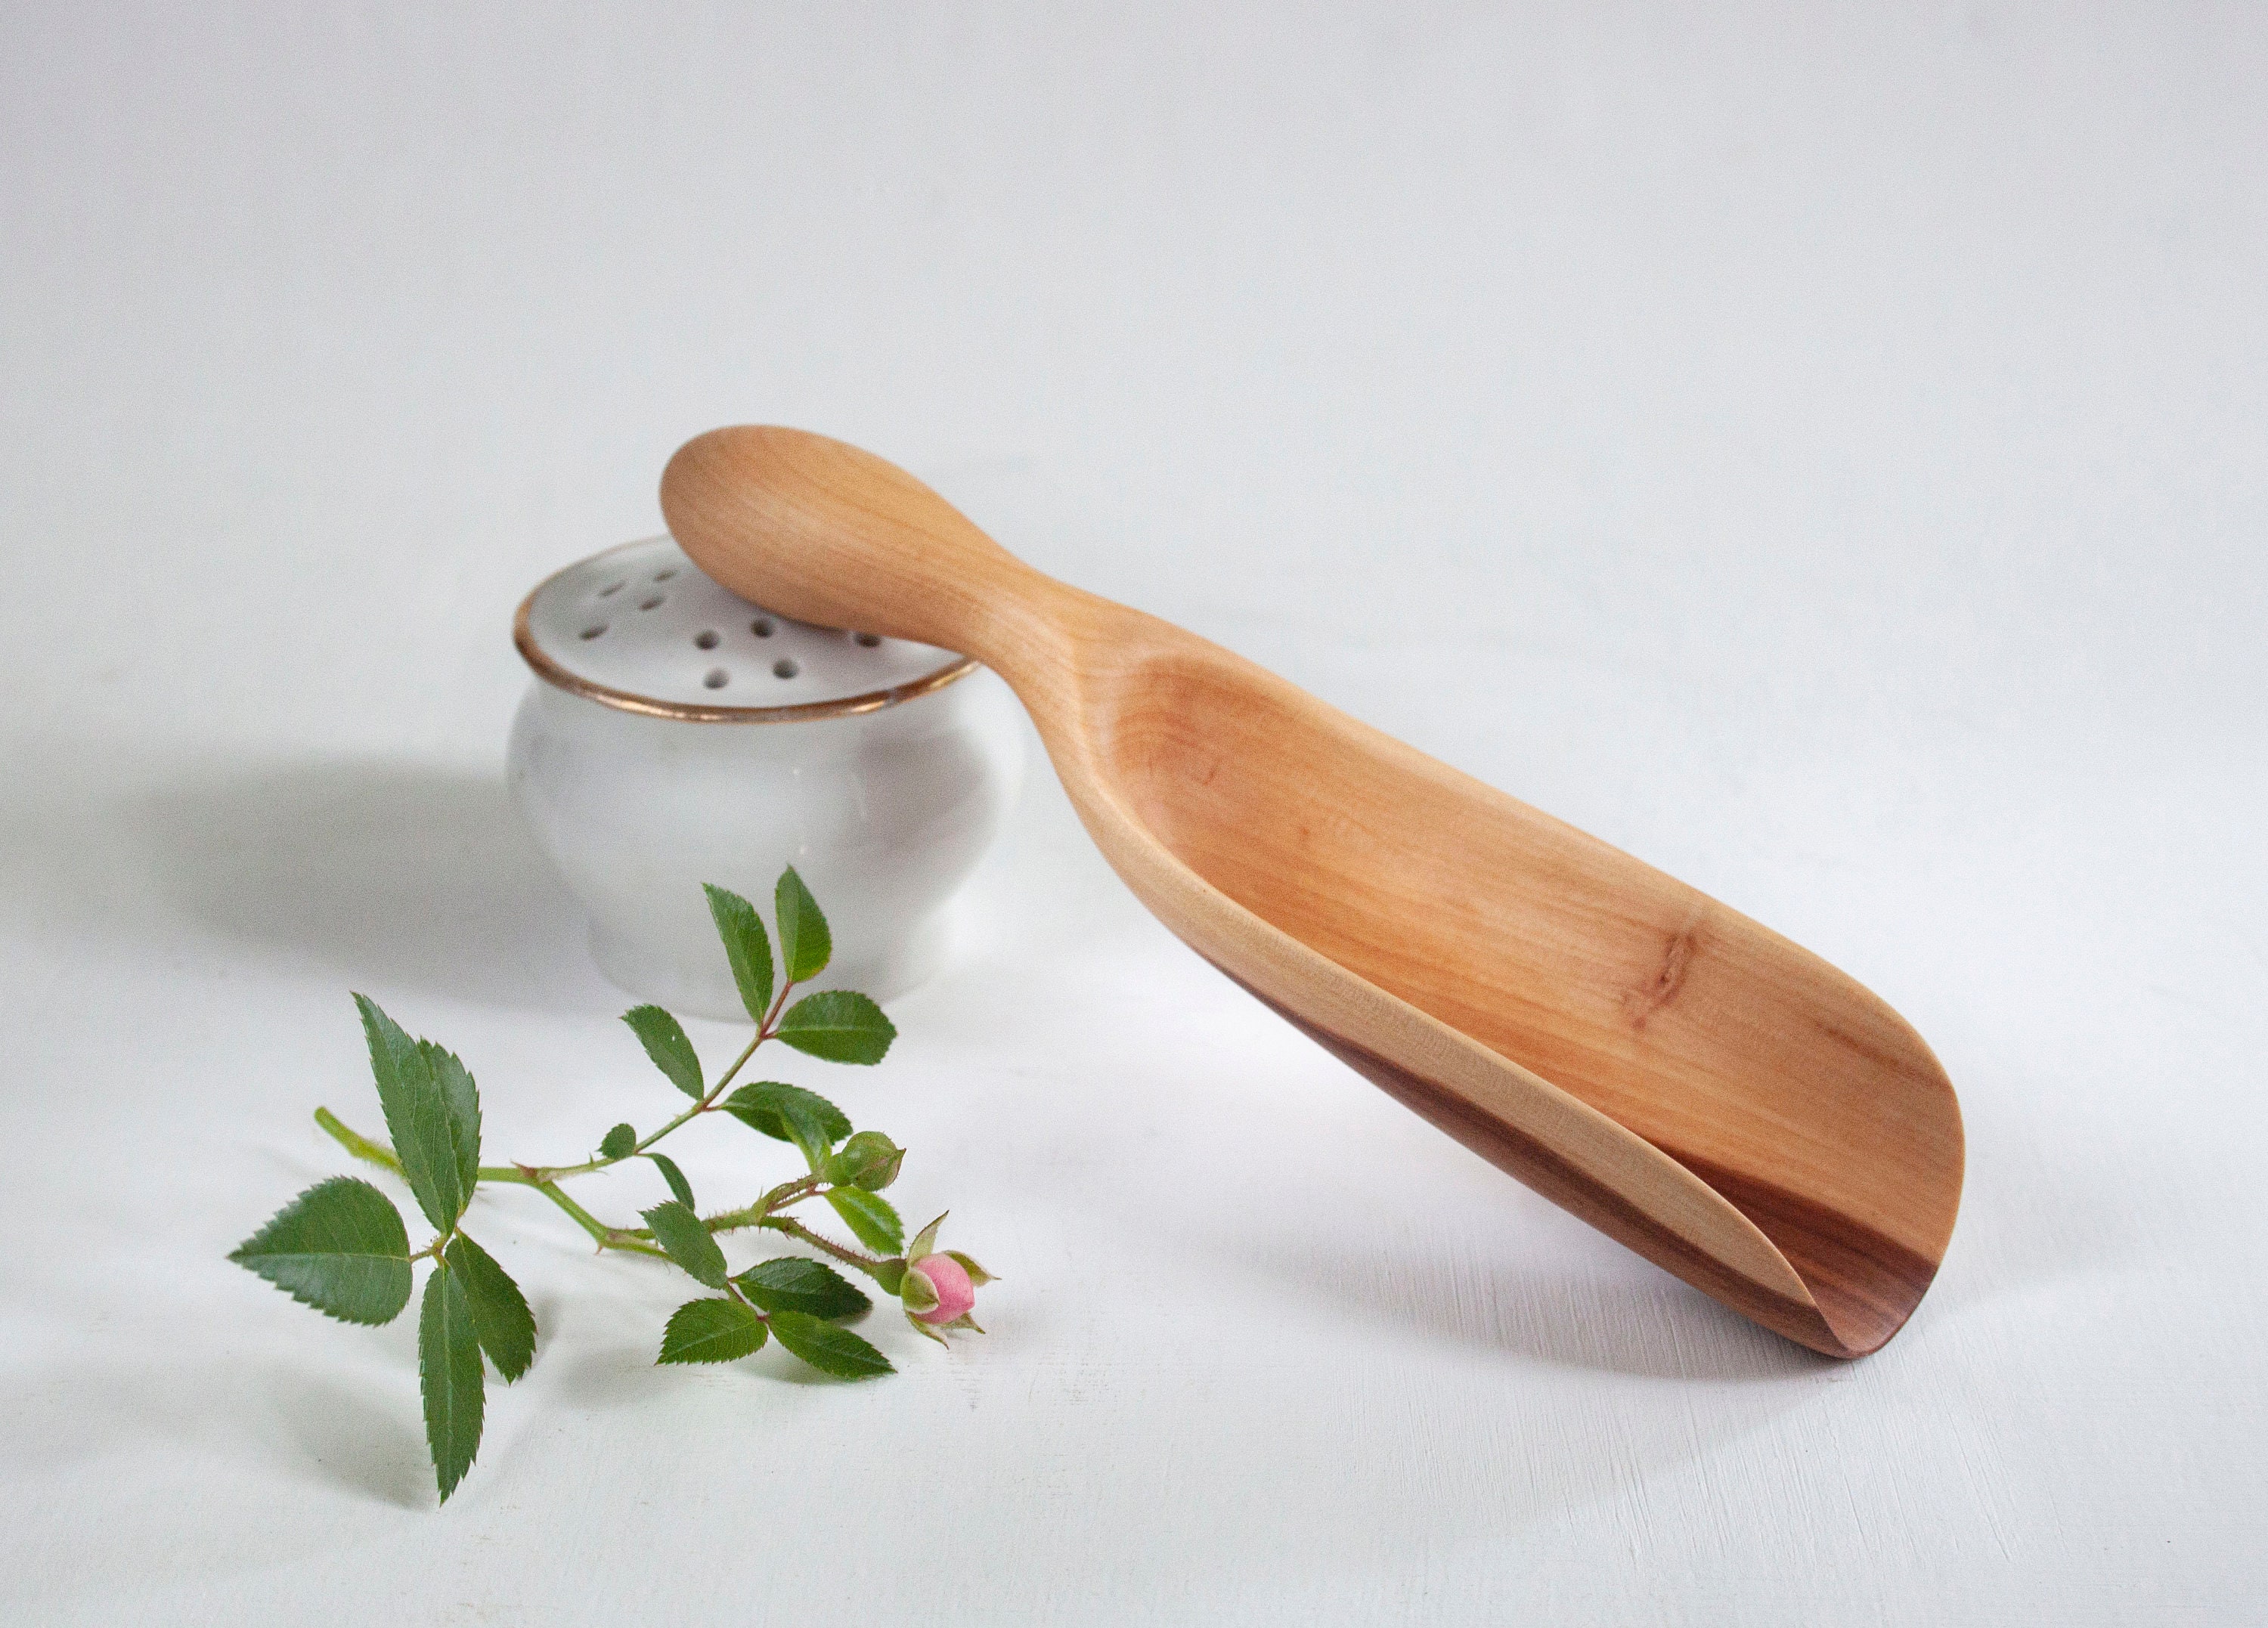 Curio Spice Company Wooden Spoons Masala Tea Scoop